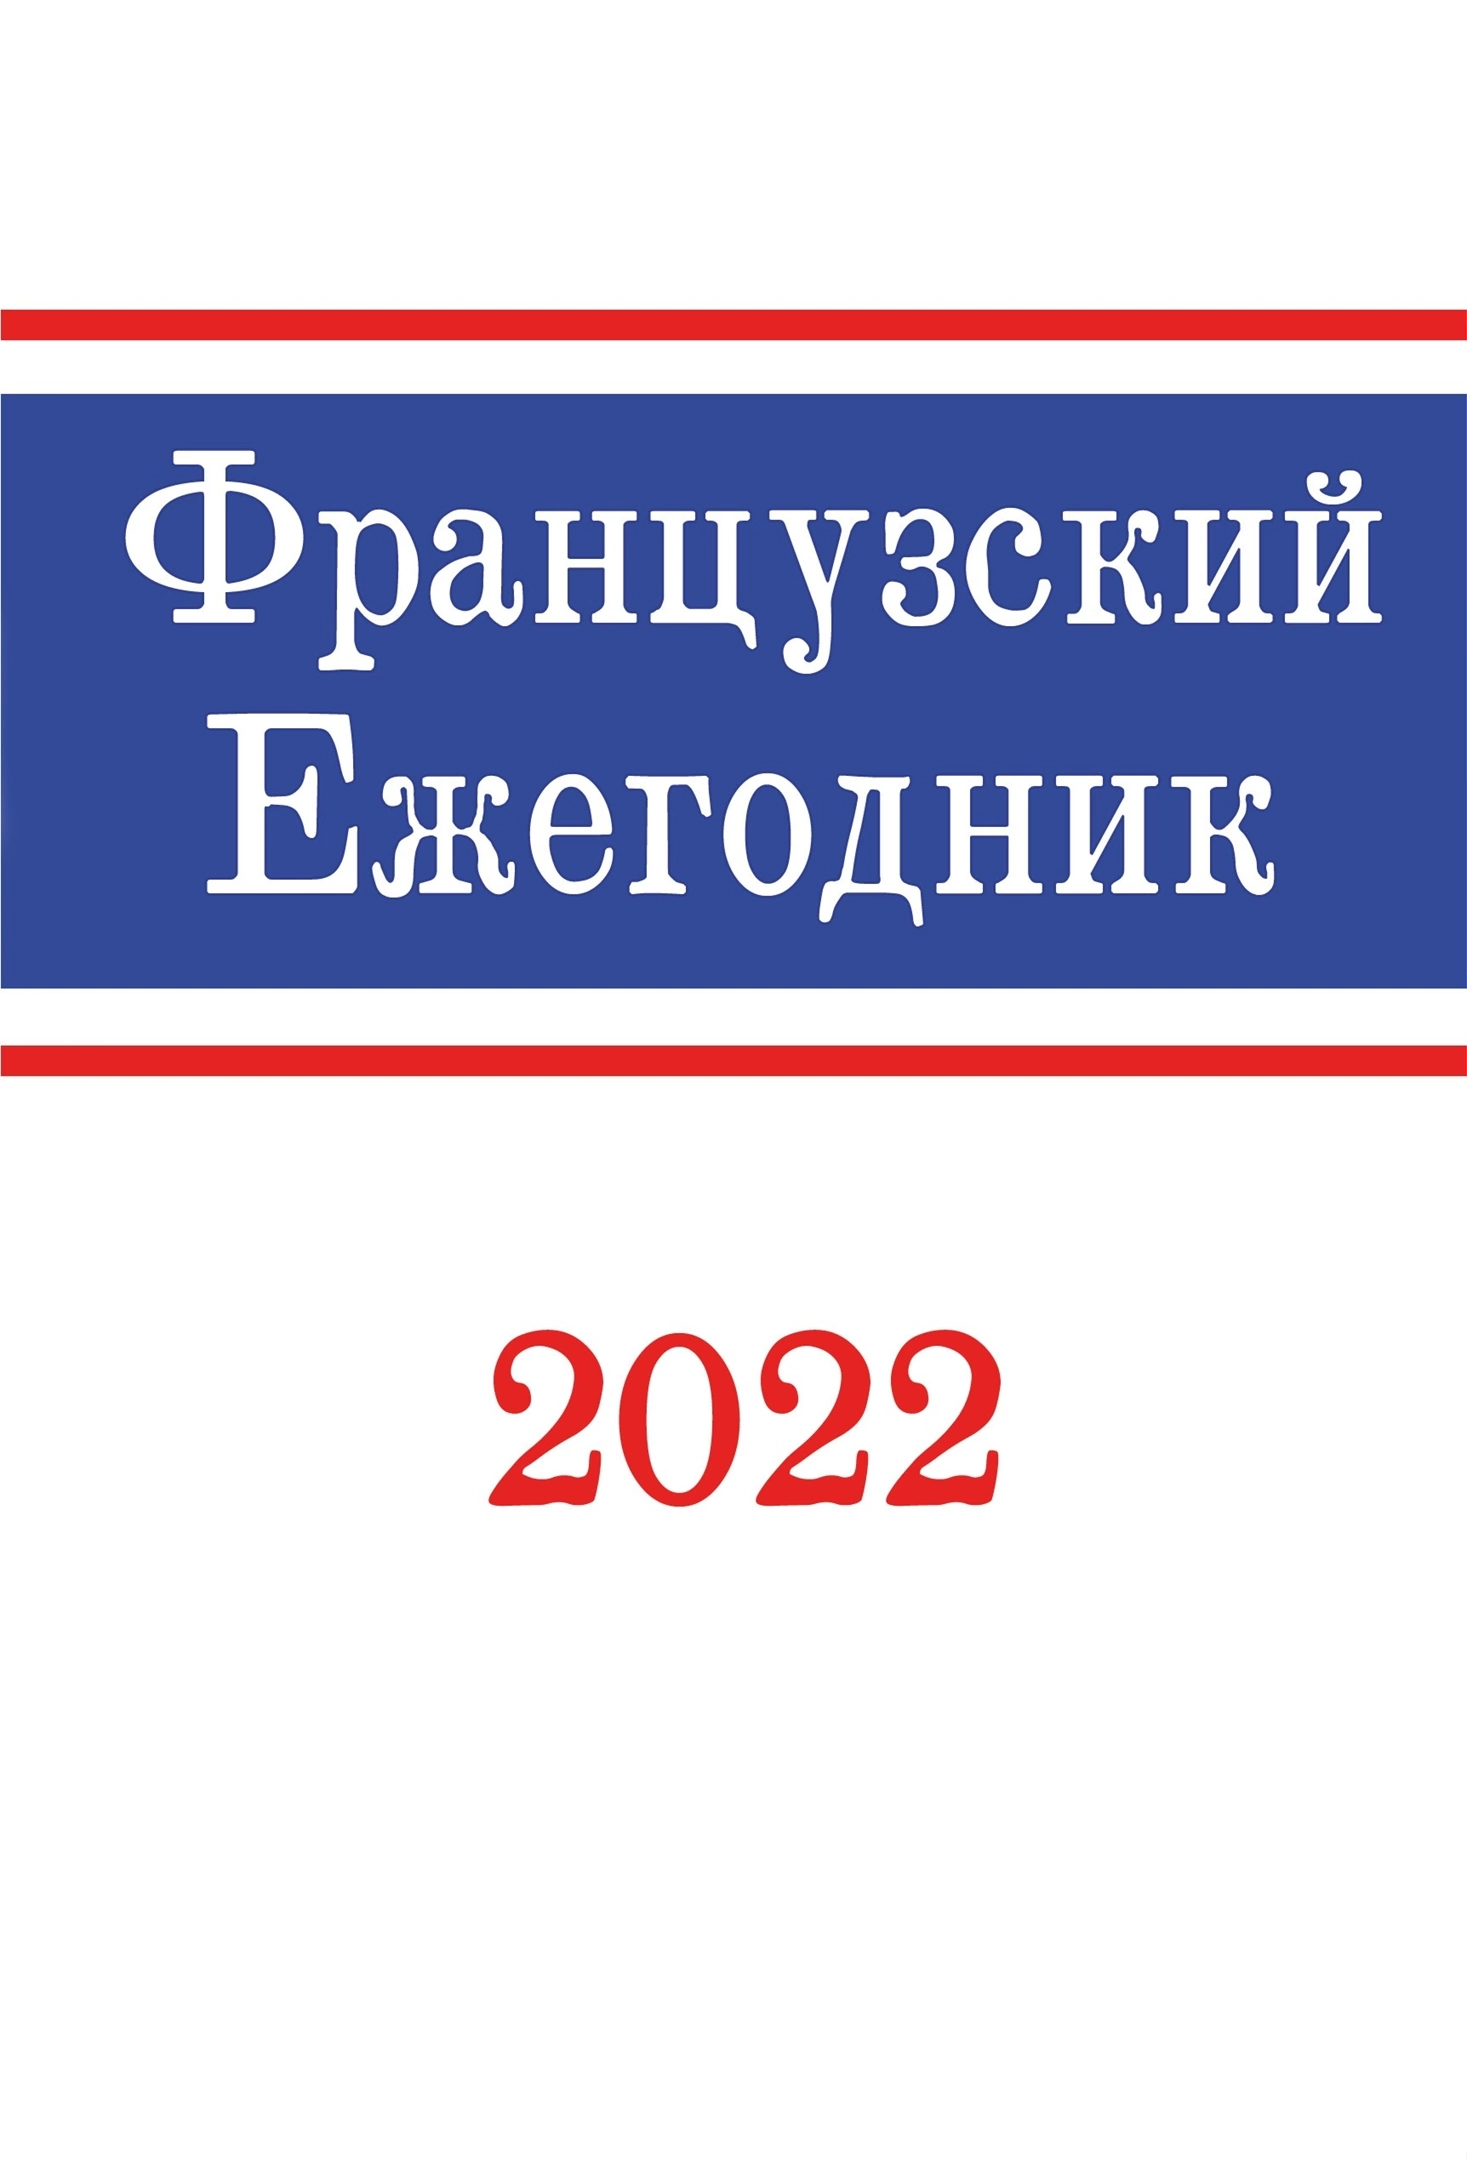 Французский ежегодник 2022